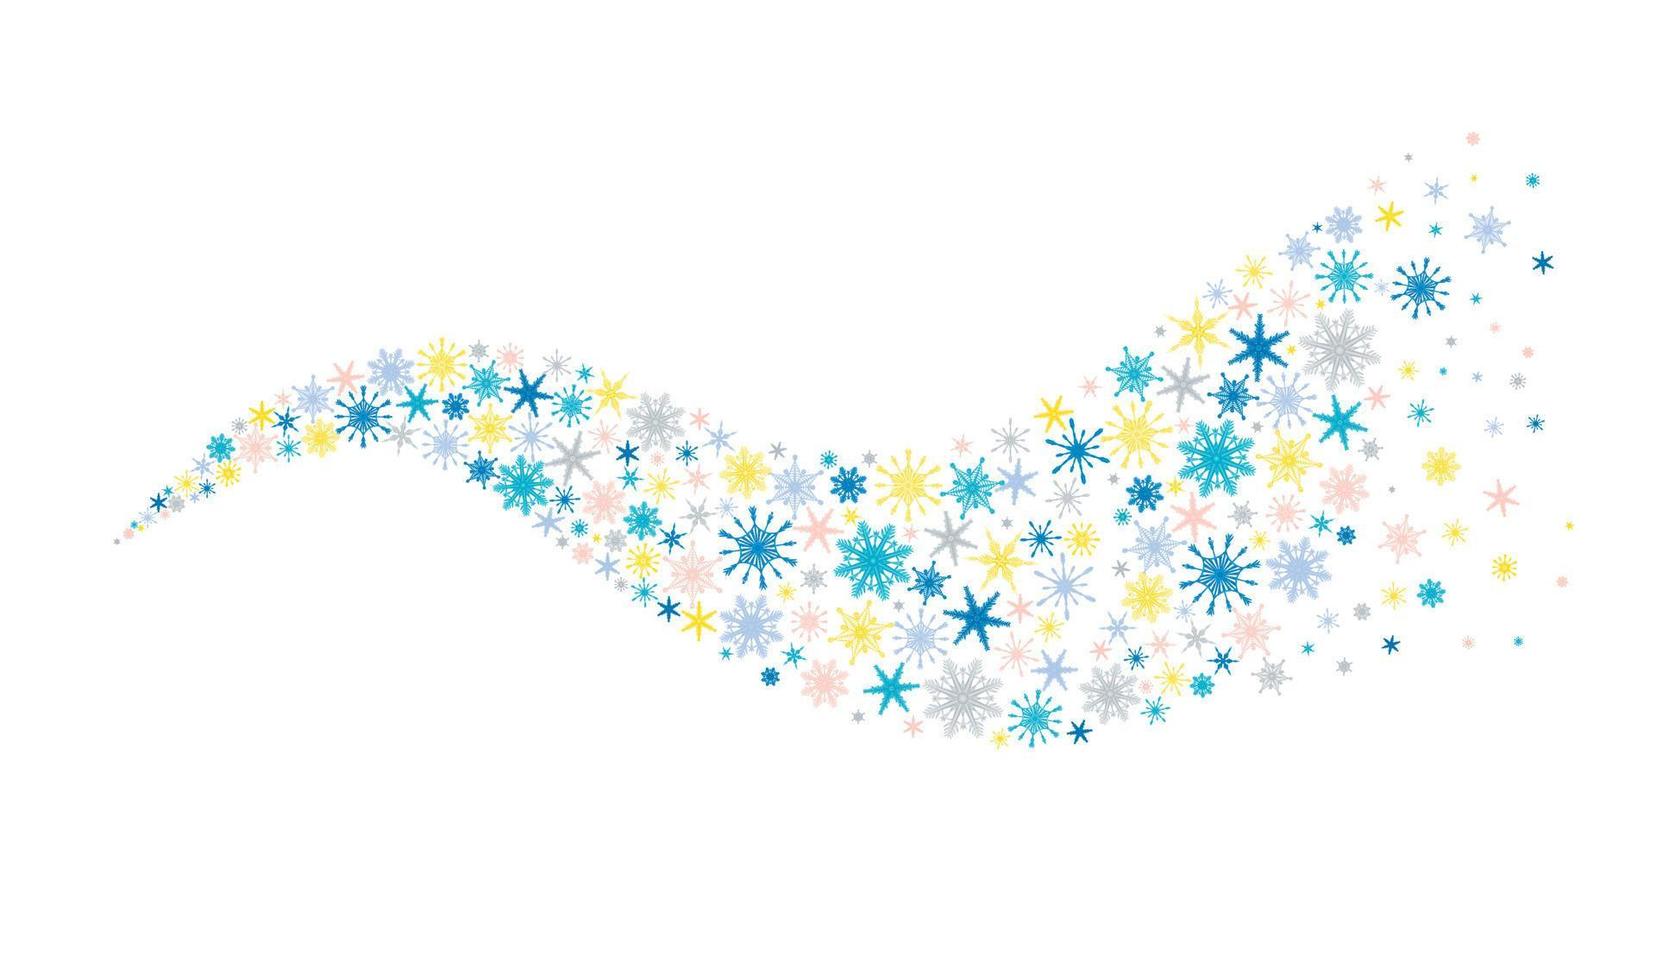 sfondo invernale blizdecorative con fiocchi di neve multicolori disegnati a mano con gradiente, neve, ricciolo, bufera di neve, elementi di design. decorazioni natalizie vettore